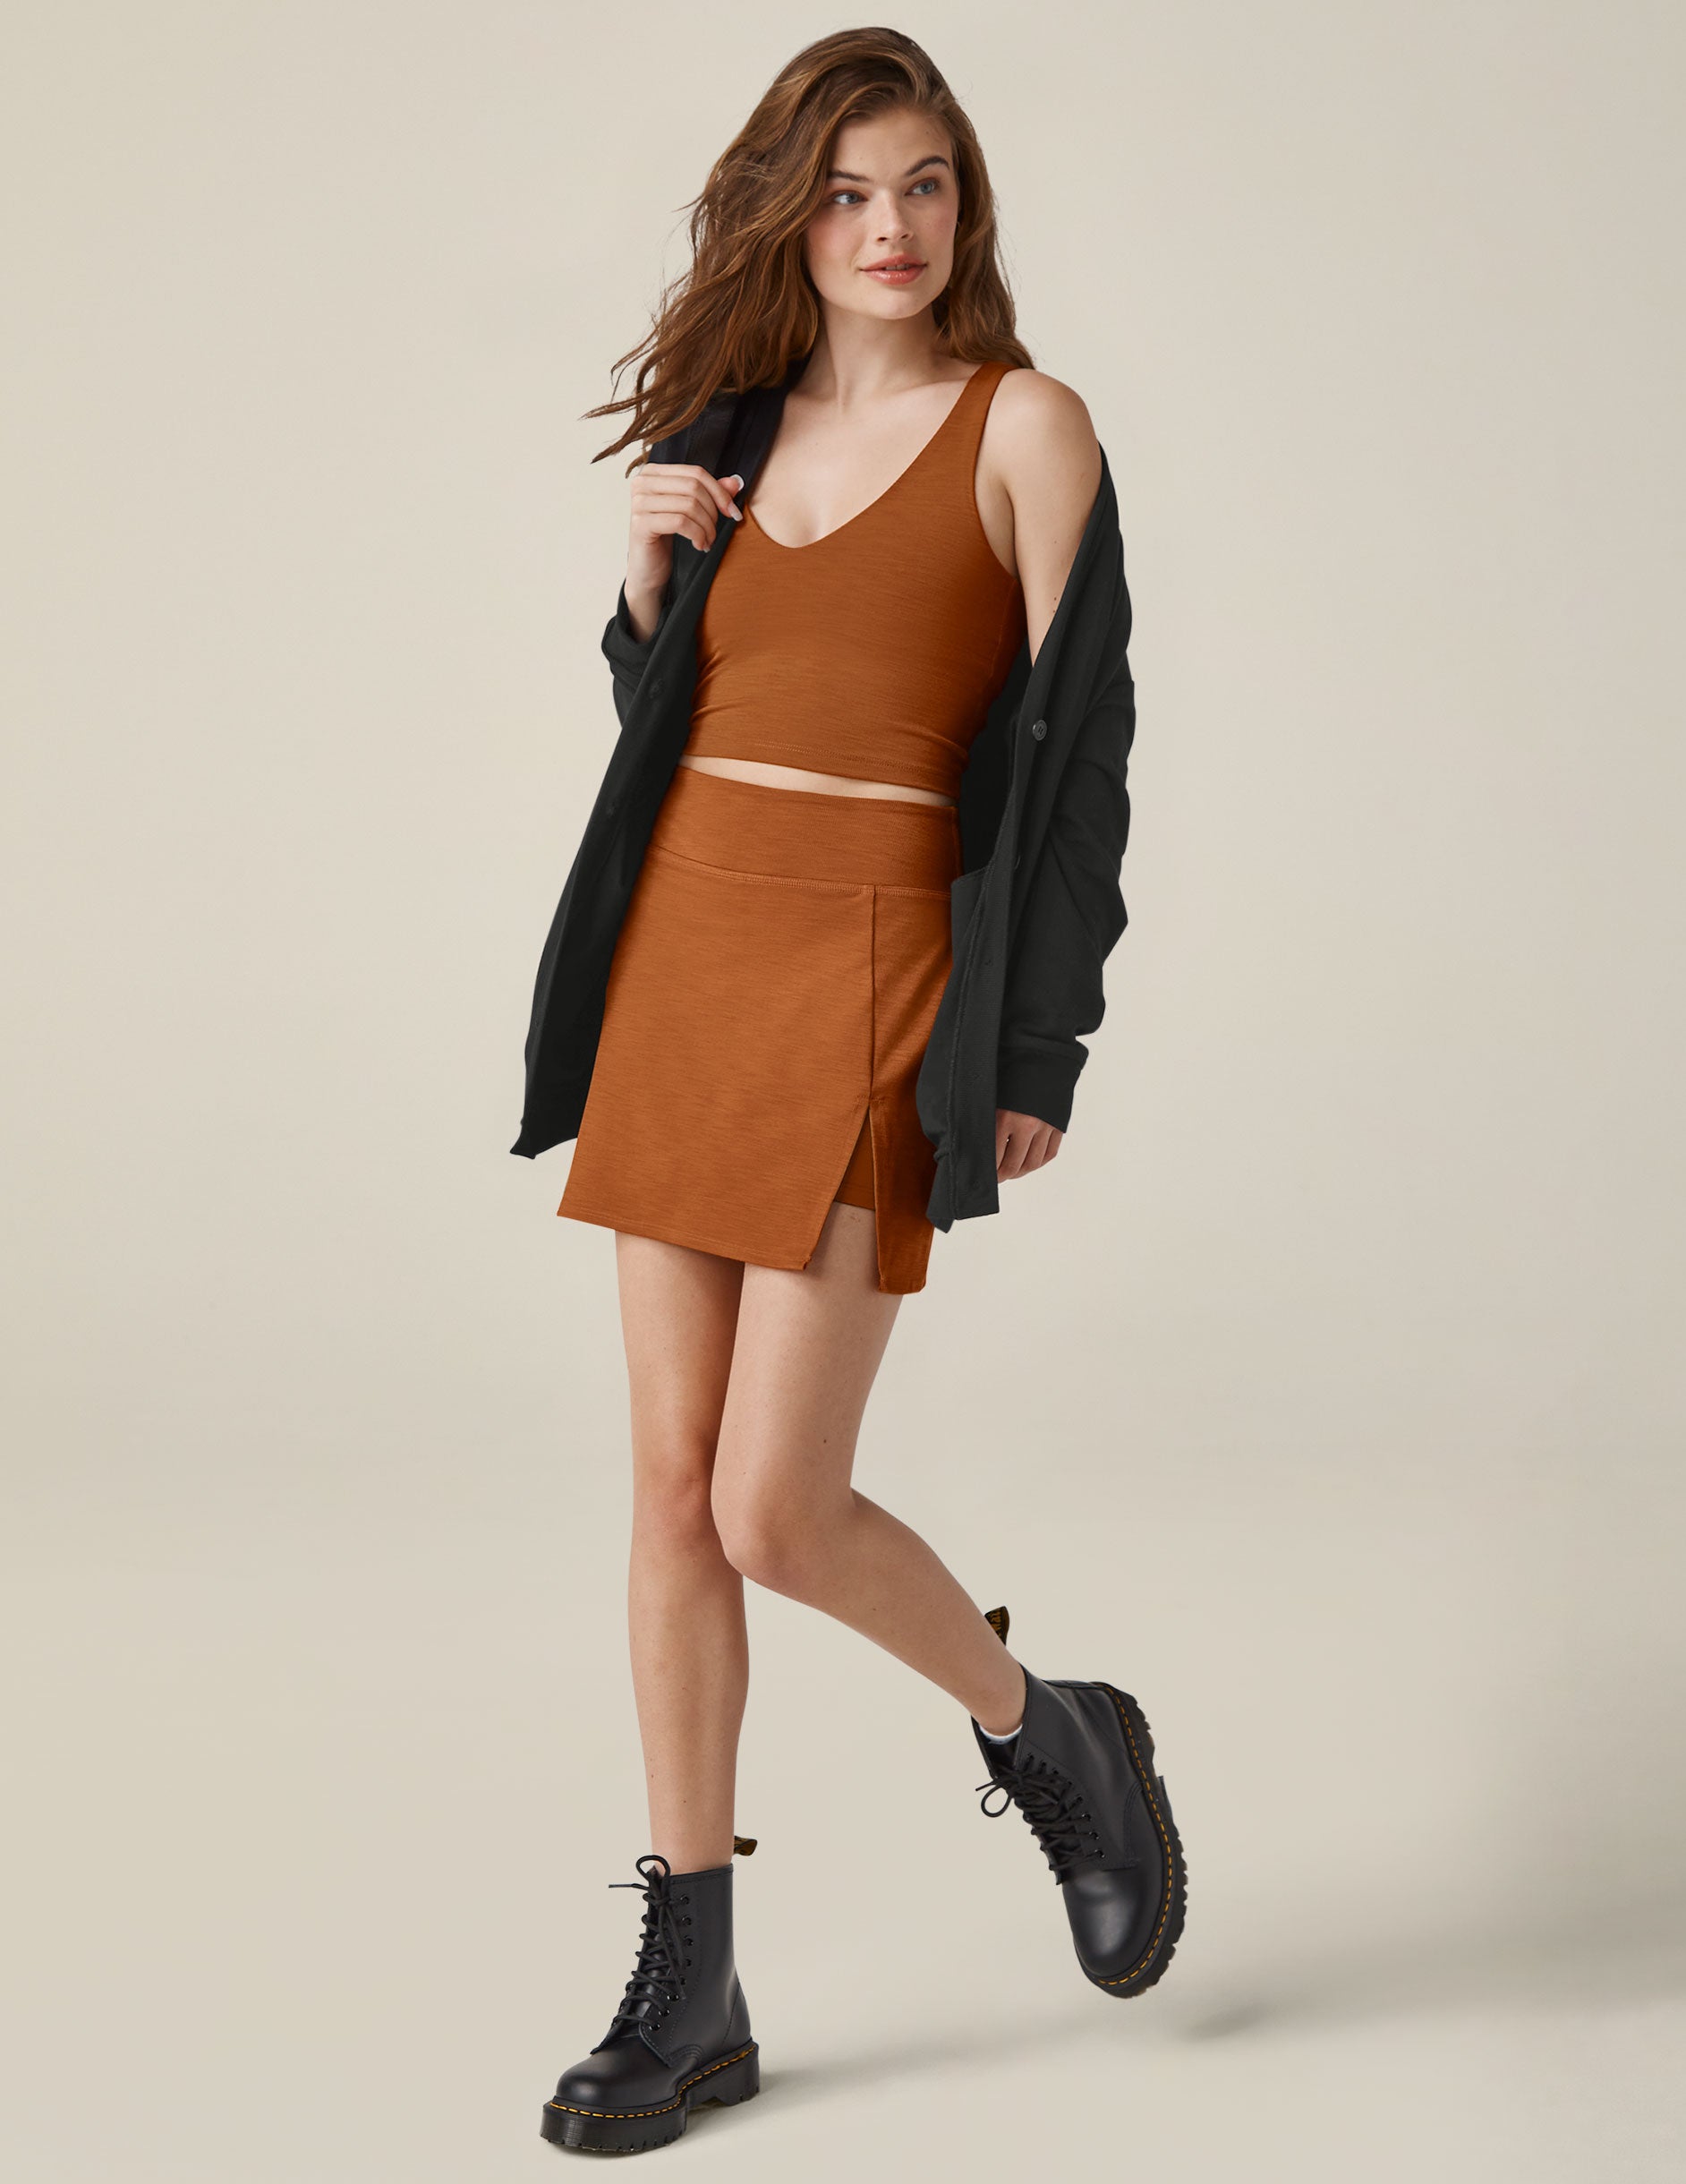 brown skirt with slit